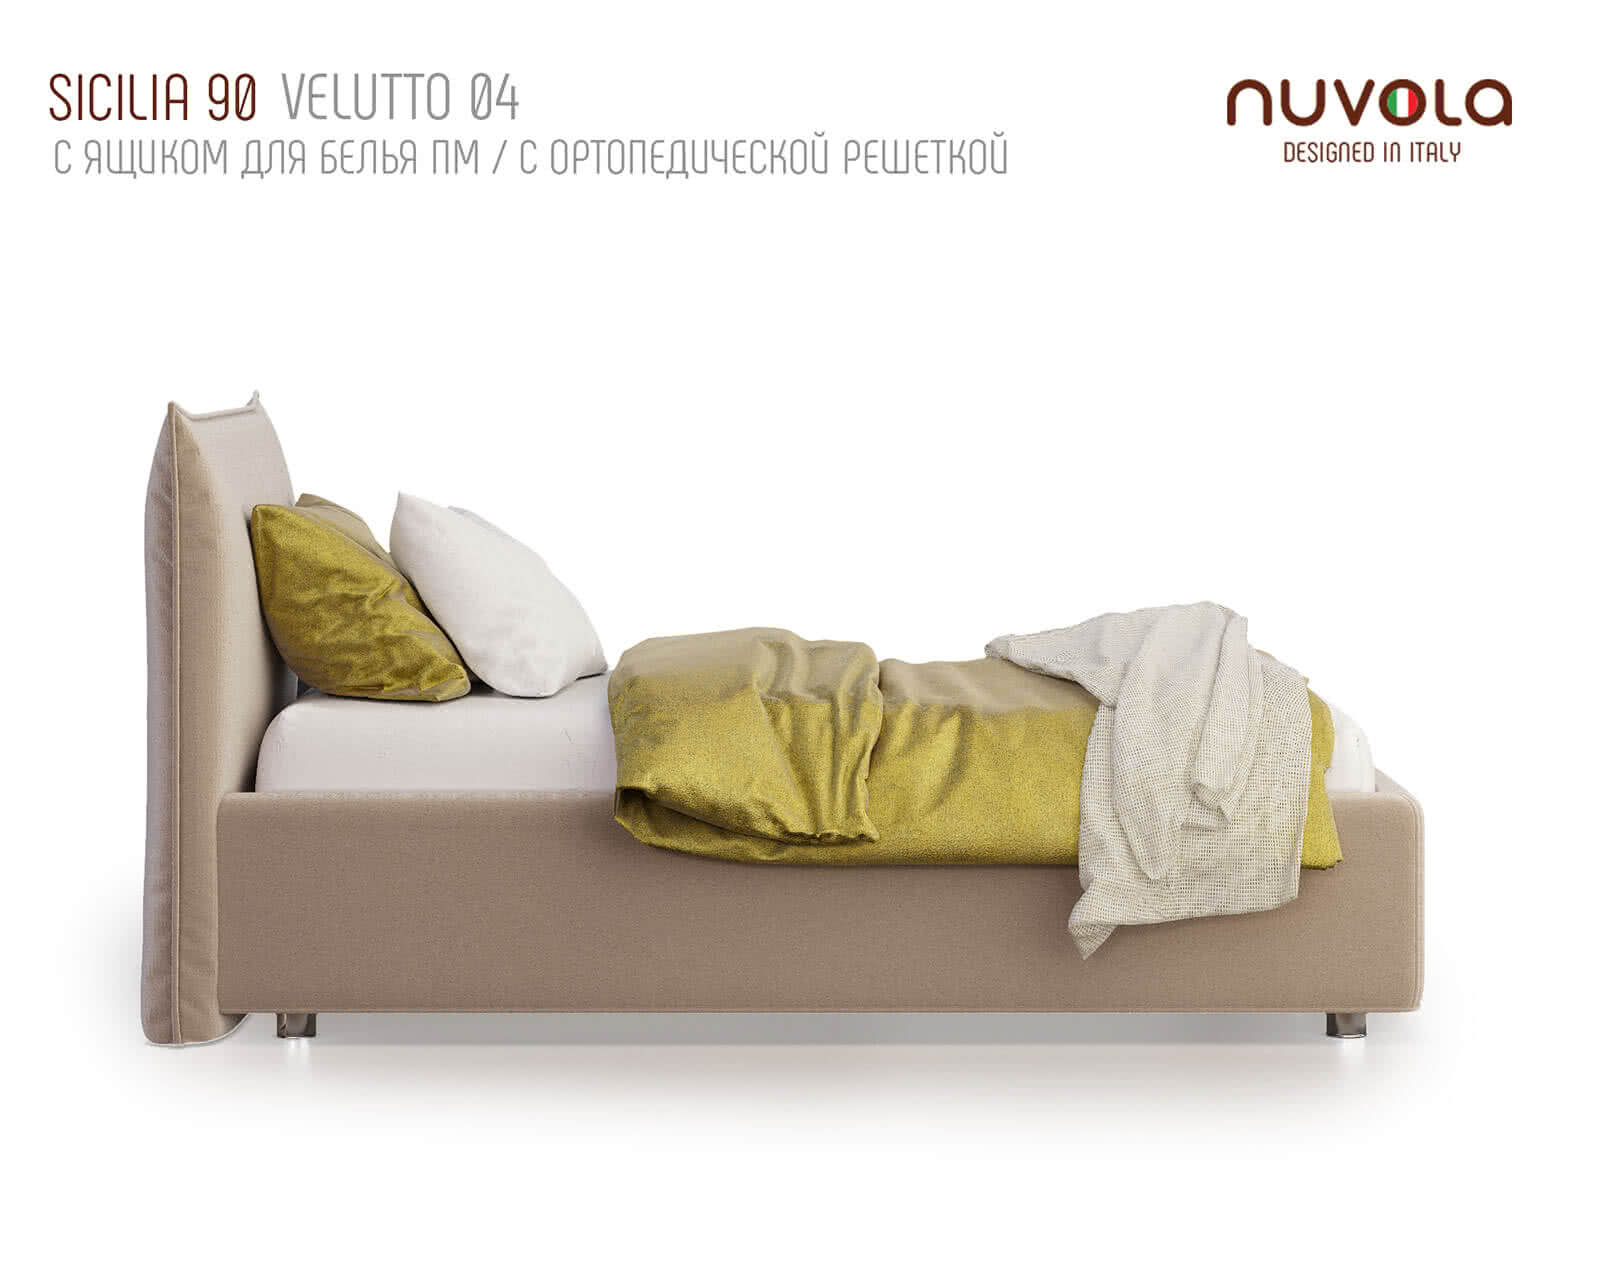 Кровать Sicilia Nuvola. Нувола кровать Сицилия. Кровать Nuvola 1. Кровать Nuvola 7. Сицилия 1 мая 160